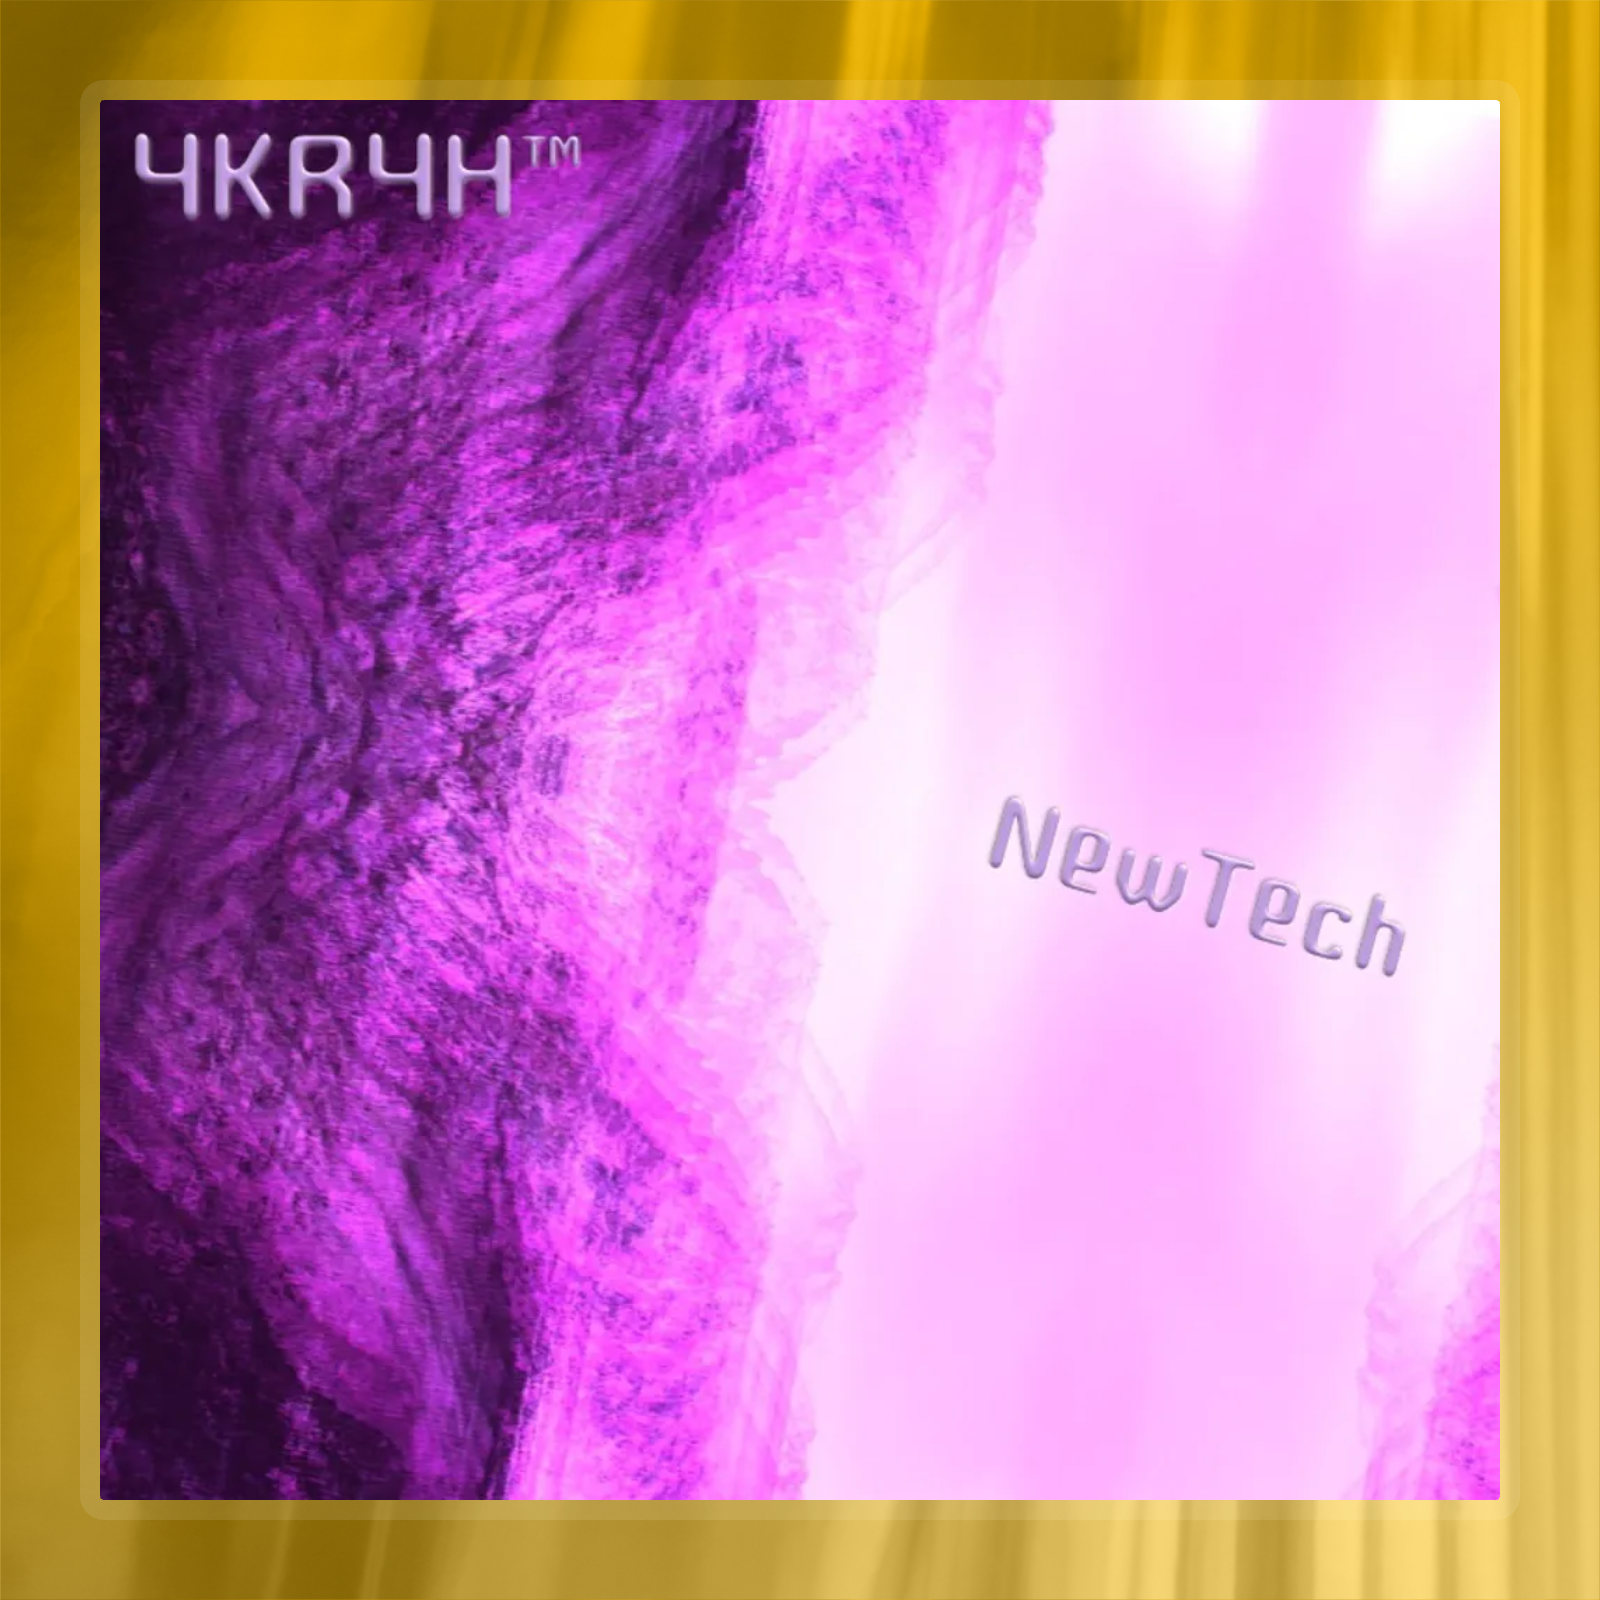 NewTech